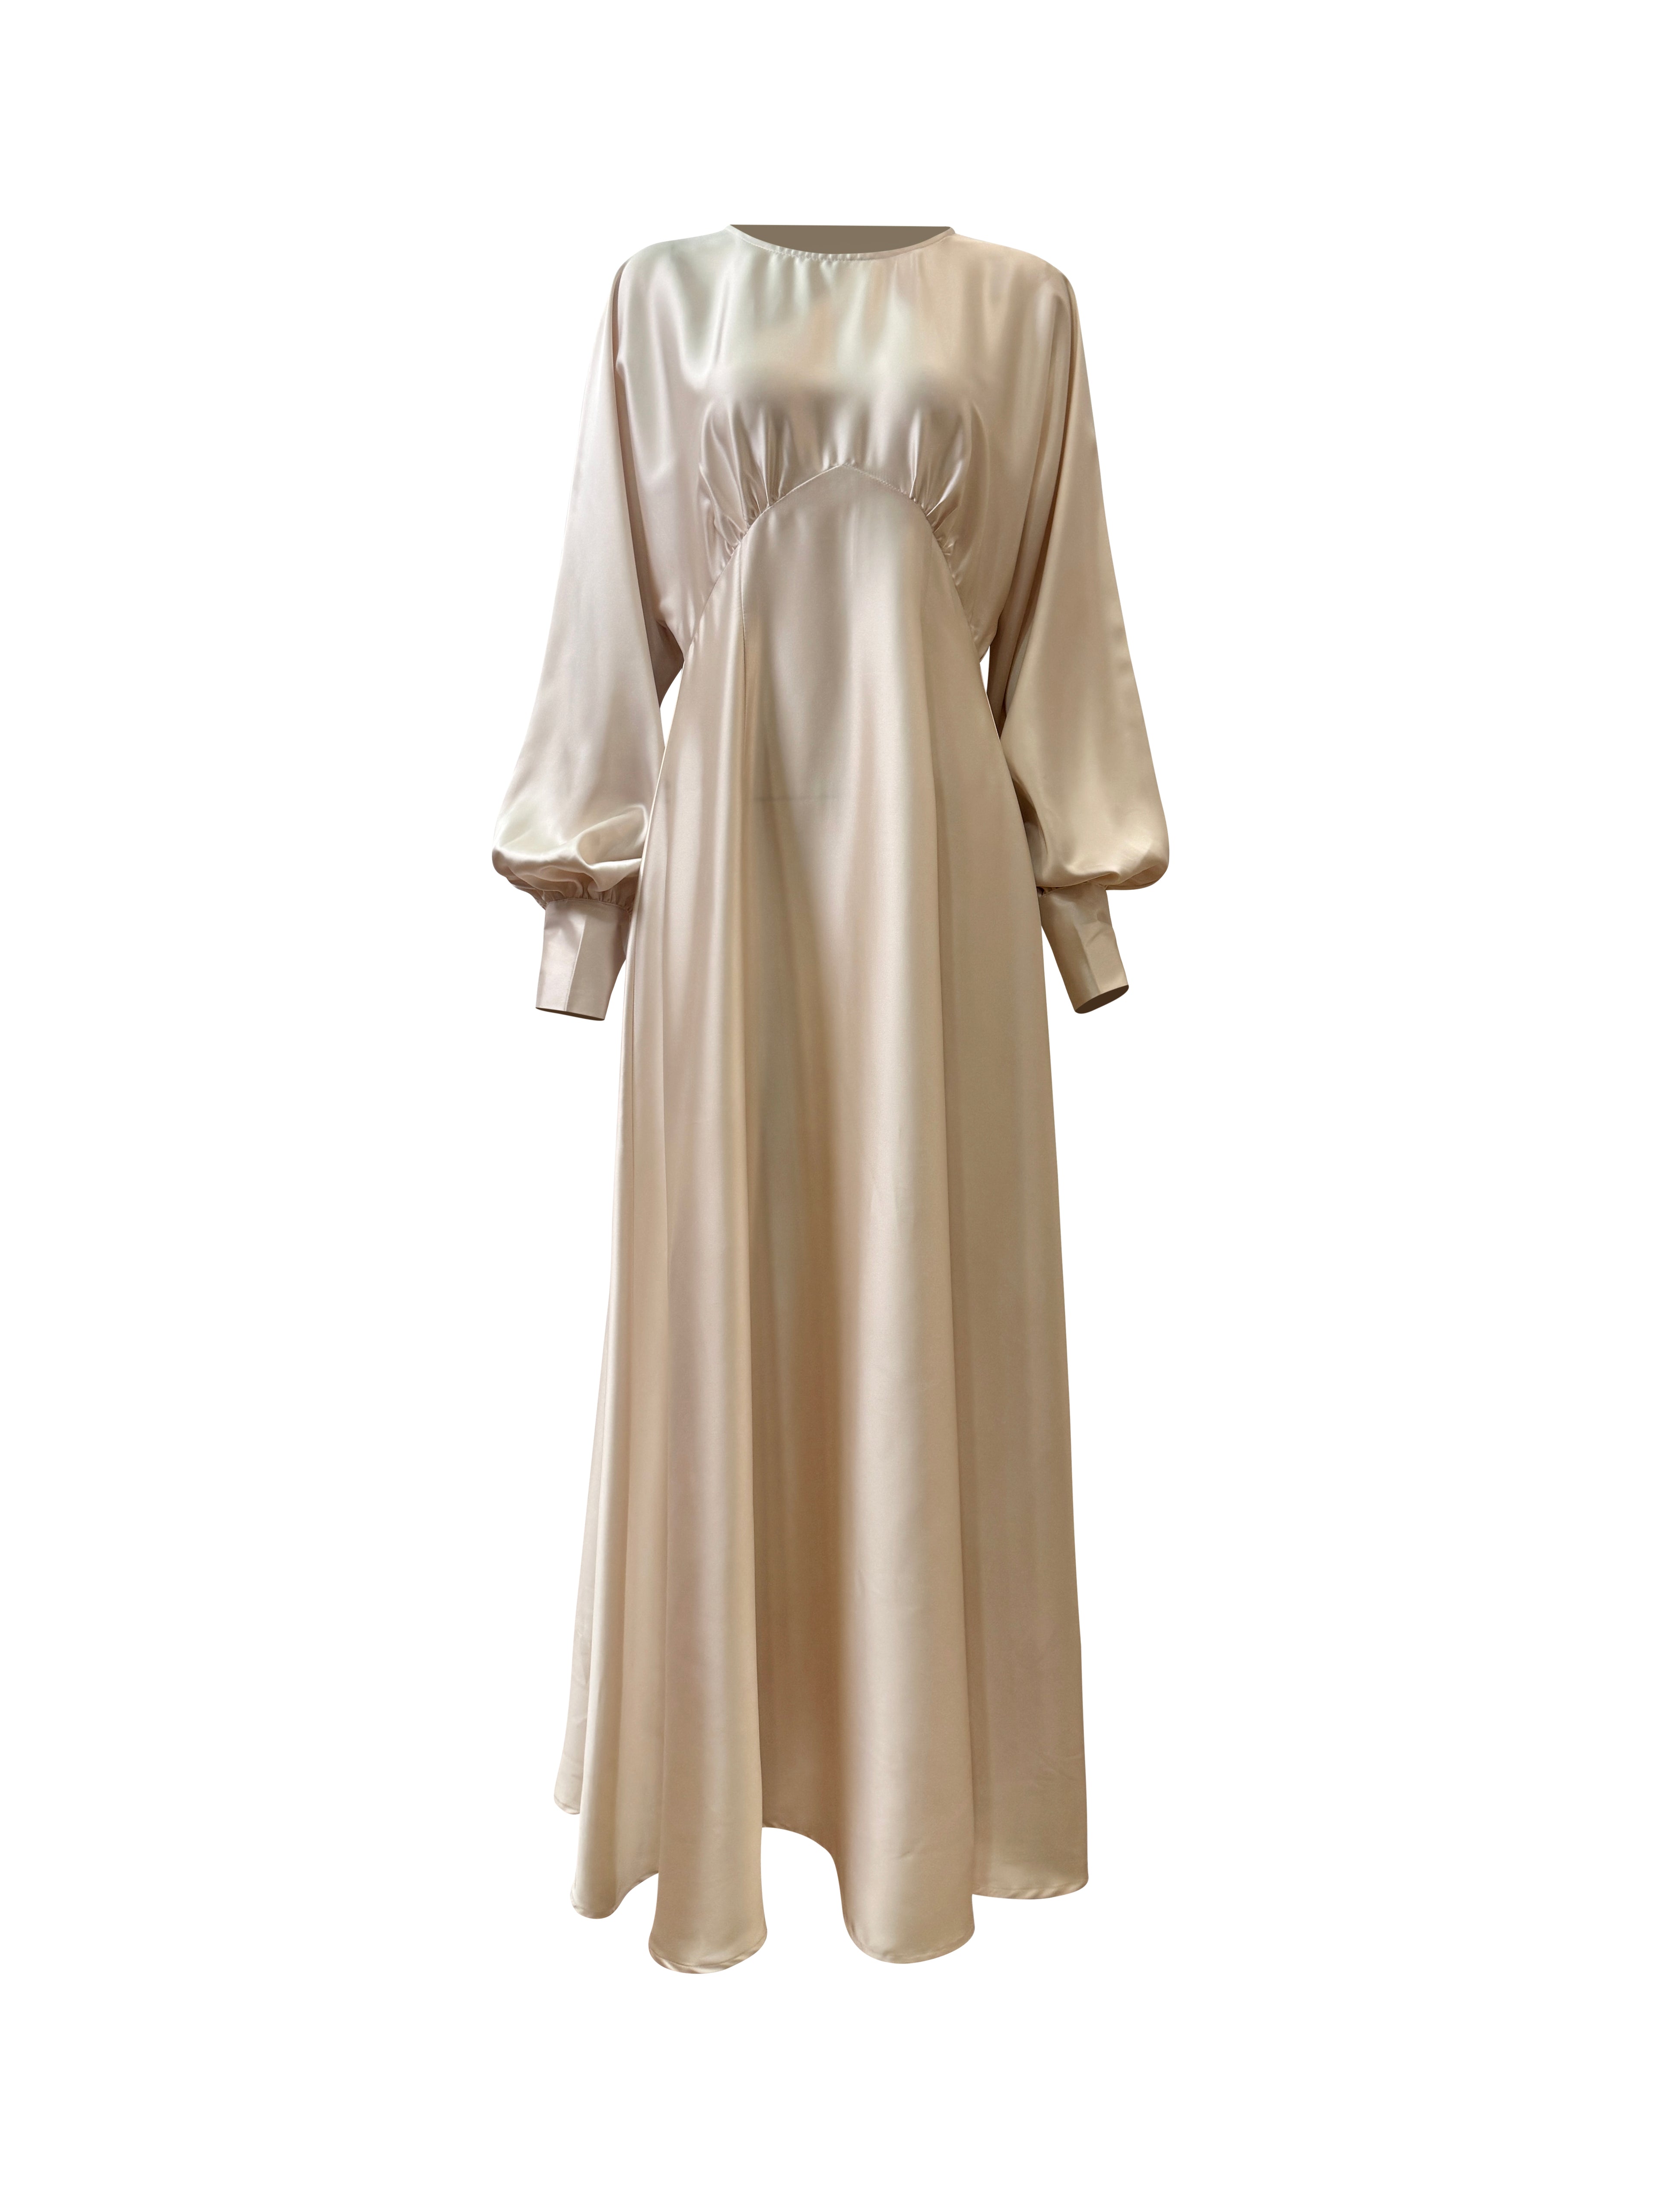 Imelda Batwing Dress - Ivory